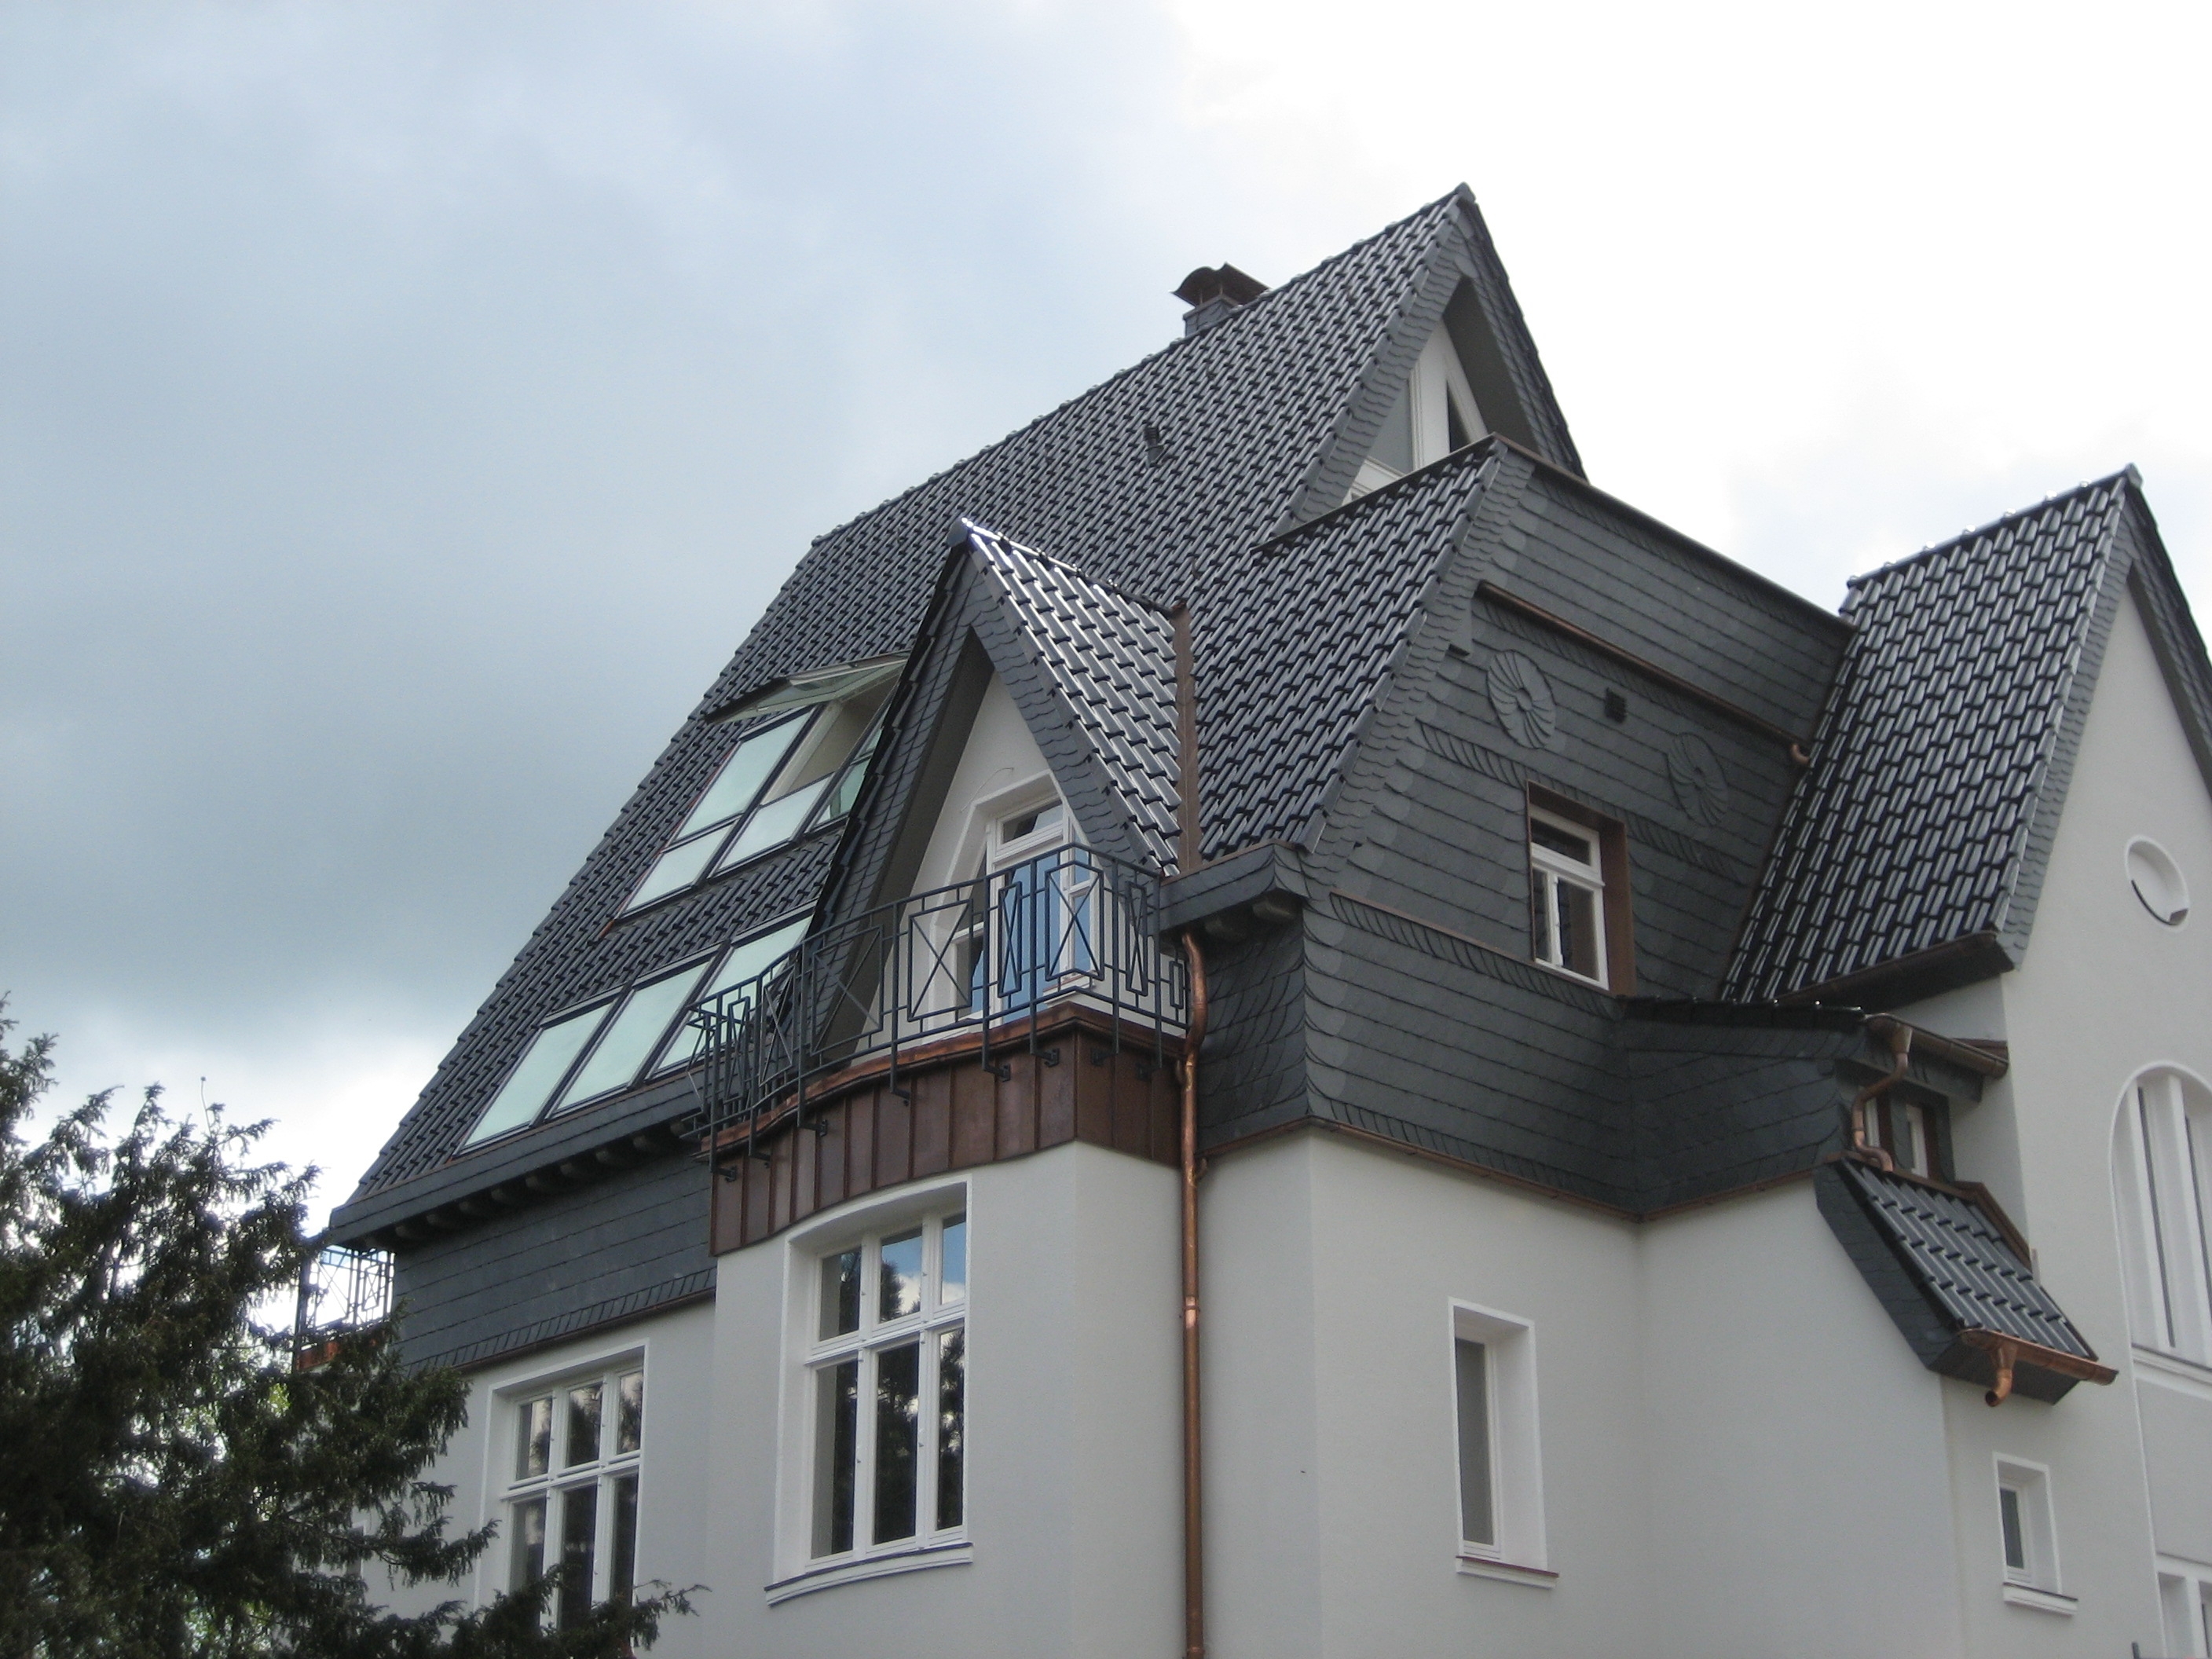 Umbau Des Daches mit mehrfach verglasten Dachfenstern und Dämmung aus PUR/PIR Aufdachdämmung schafften höhere Behaglichkeit und führten zu energetisch auffallenden Einsparungen